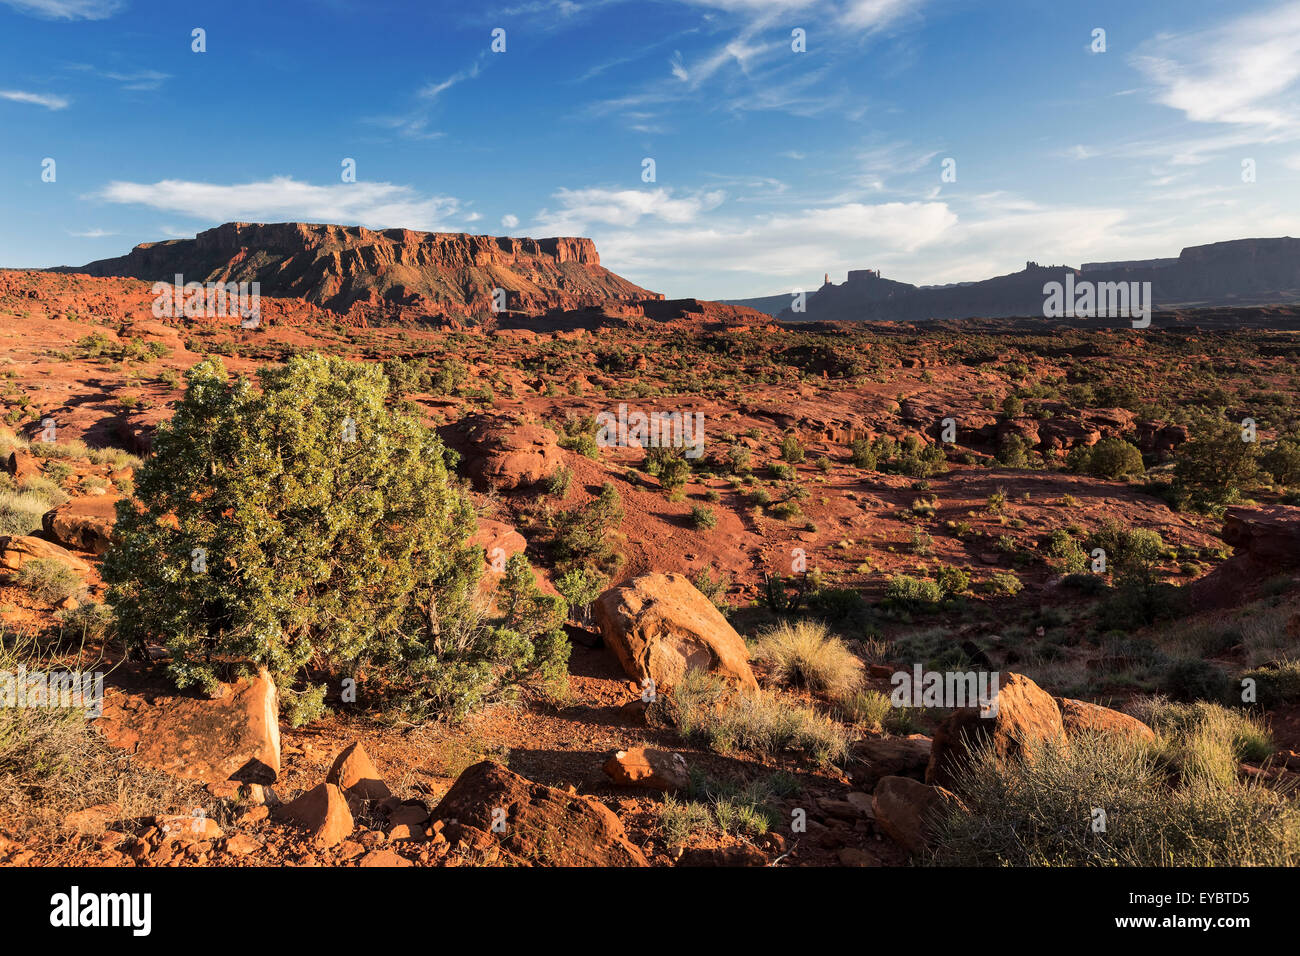 Desert of Moab, Utah Stock Photo